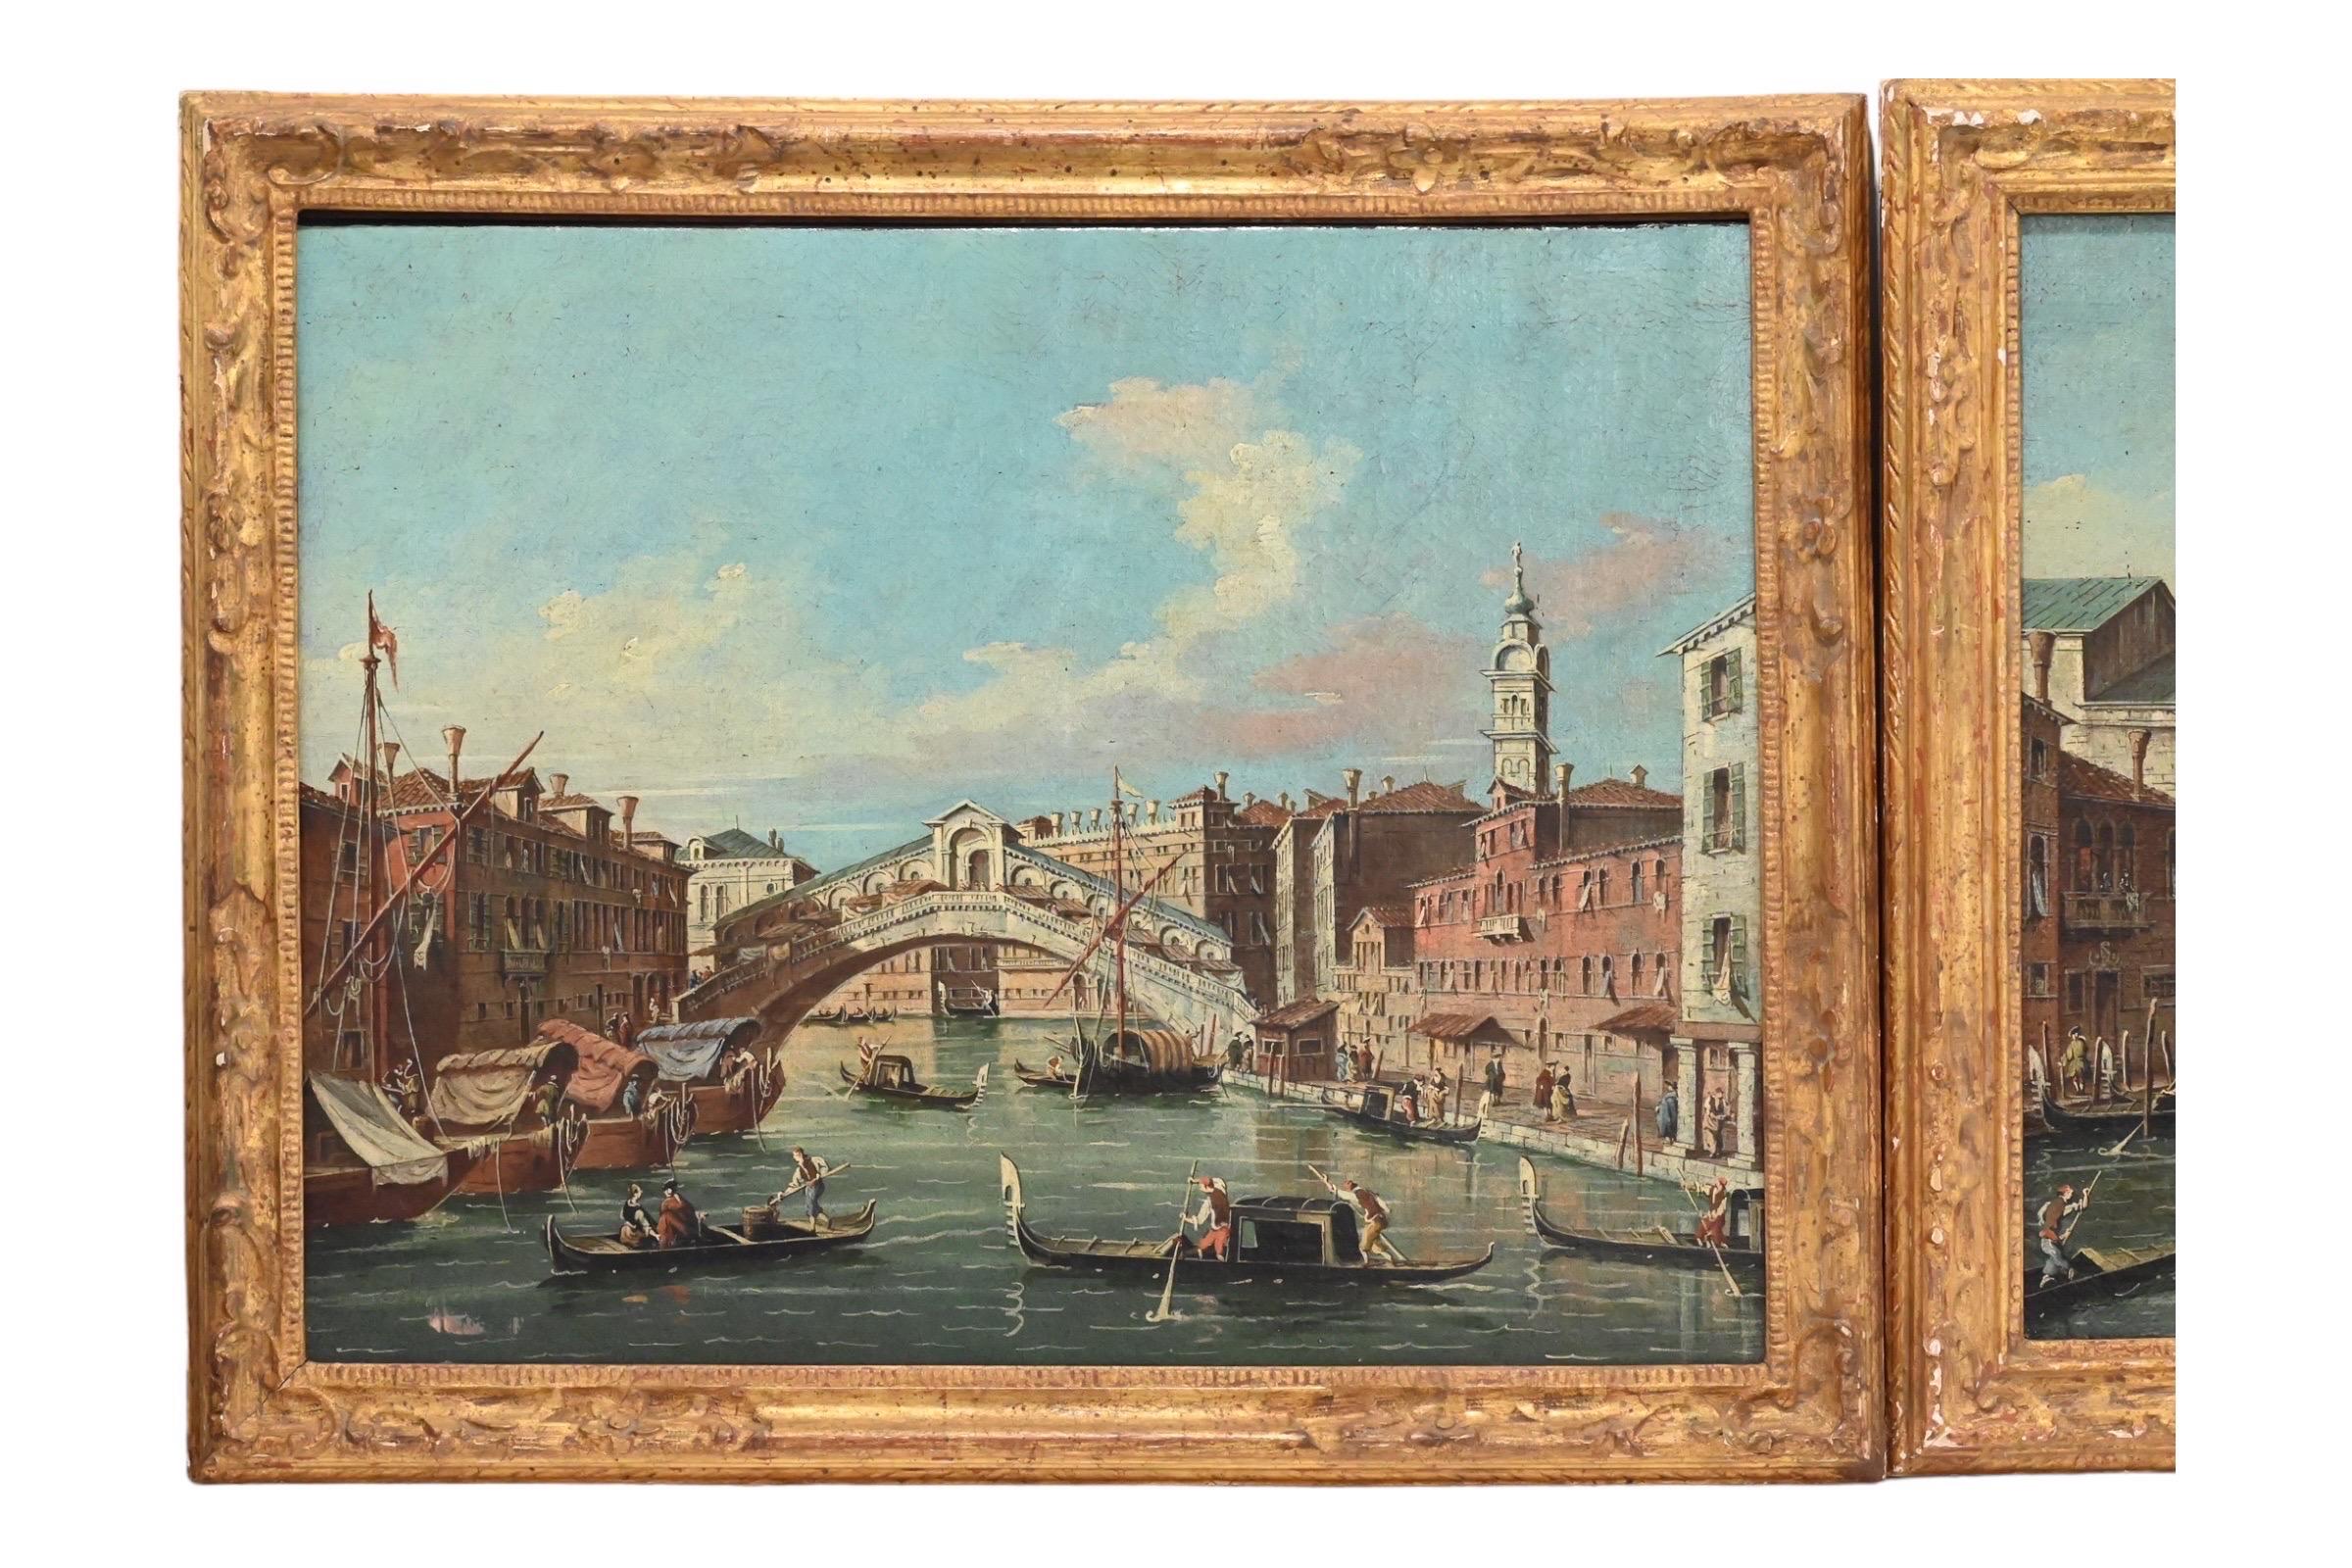 Dies ist ein sehr schönes Paar von italienischen venezianischen Öl auf Leinwand Gemälde mit fantastischen Landschaften mit schöner Verarbeitung. Die Farben sind sehr lebendig und sehr gut gemalt. Die Einzelheiten  der Figuren, Boote und